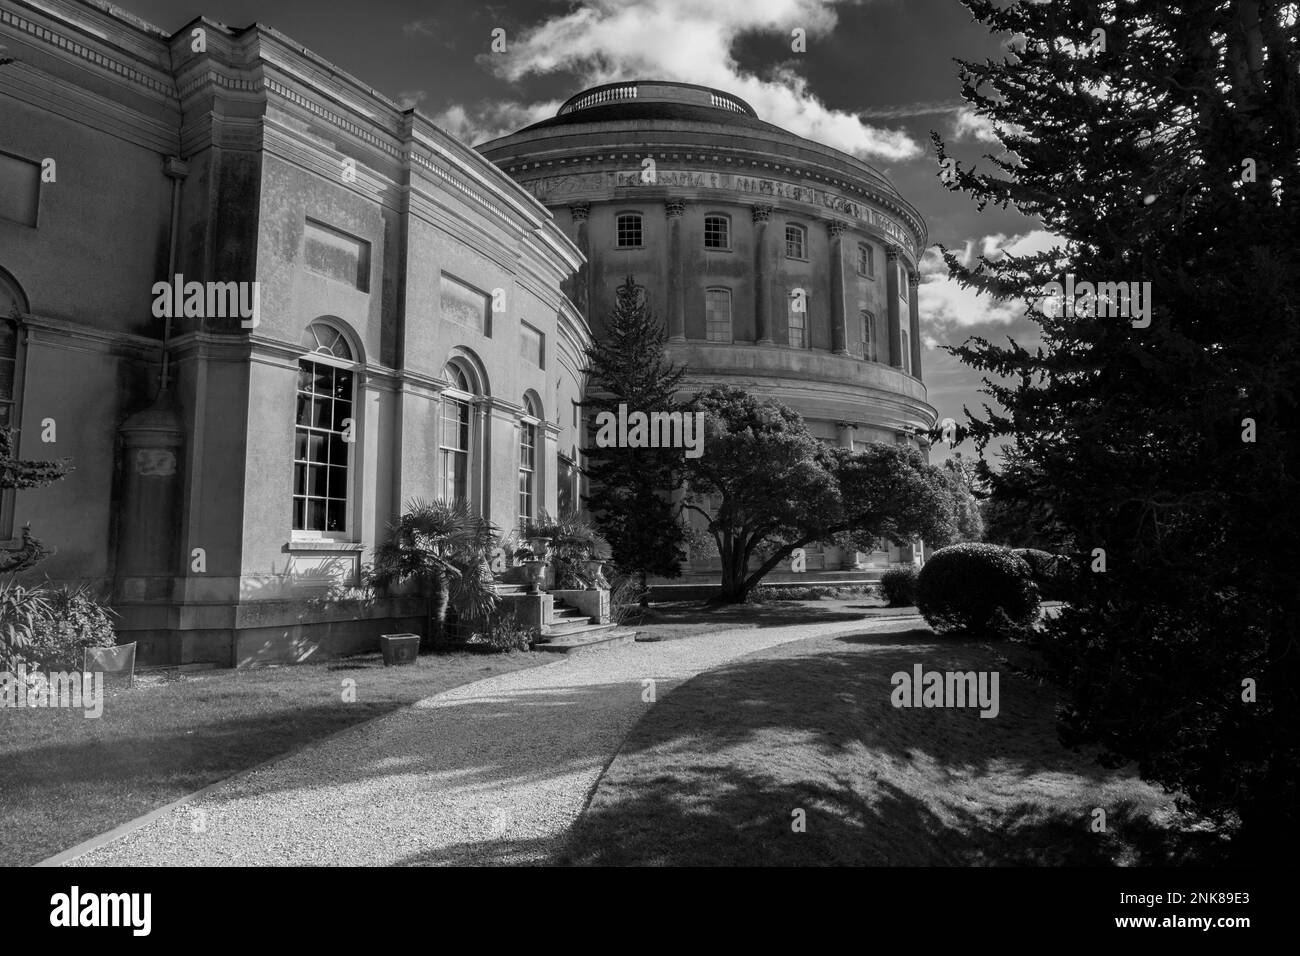 Immagini in bianco e nero della rotonda di casa Ickworth, disegnate dall'architetto Antonio Asparagcci, Foto Stock